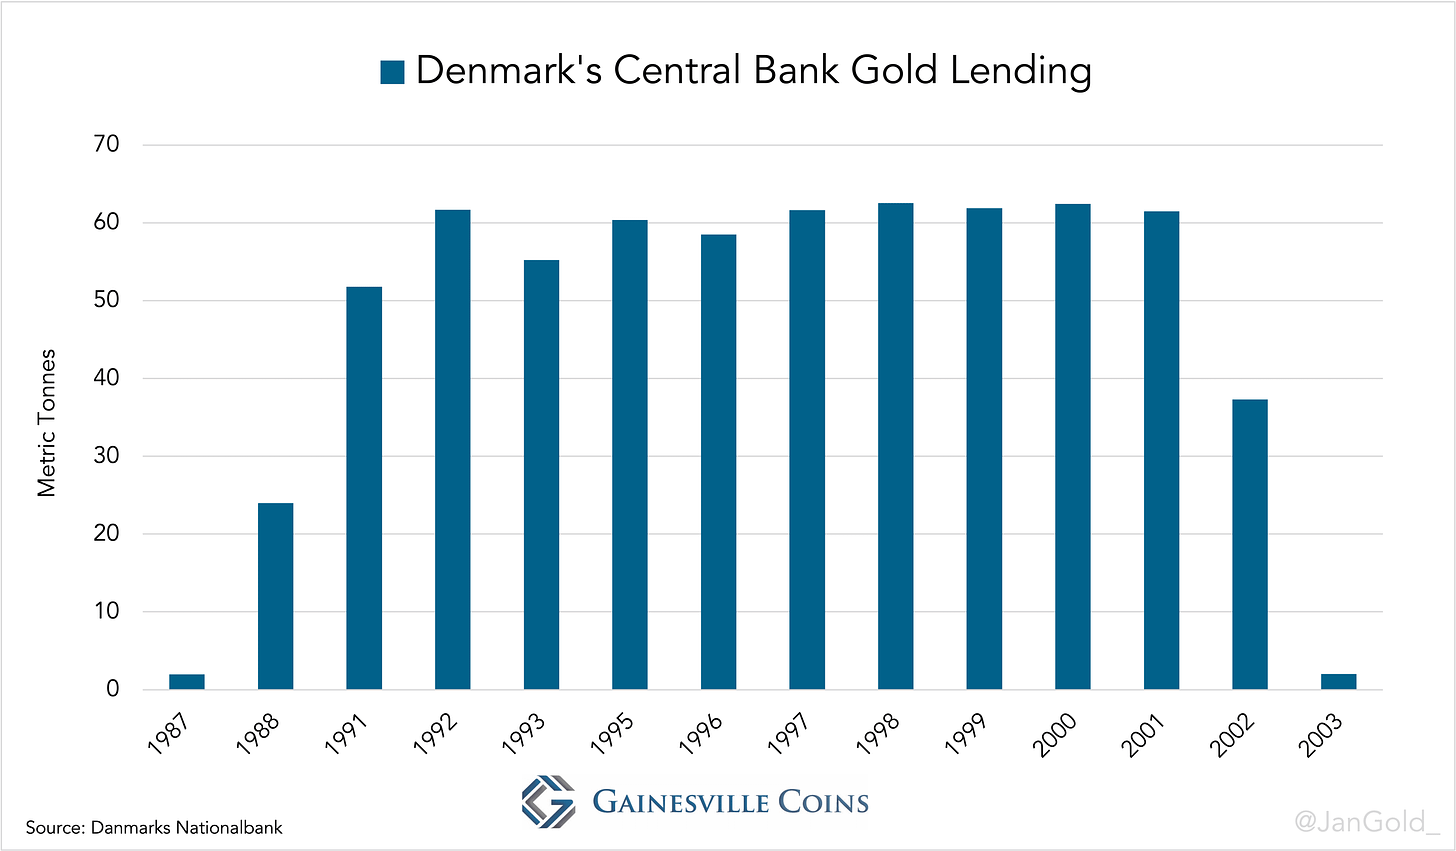 Denmark's Central Bank Gold Lending